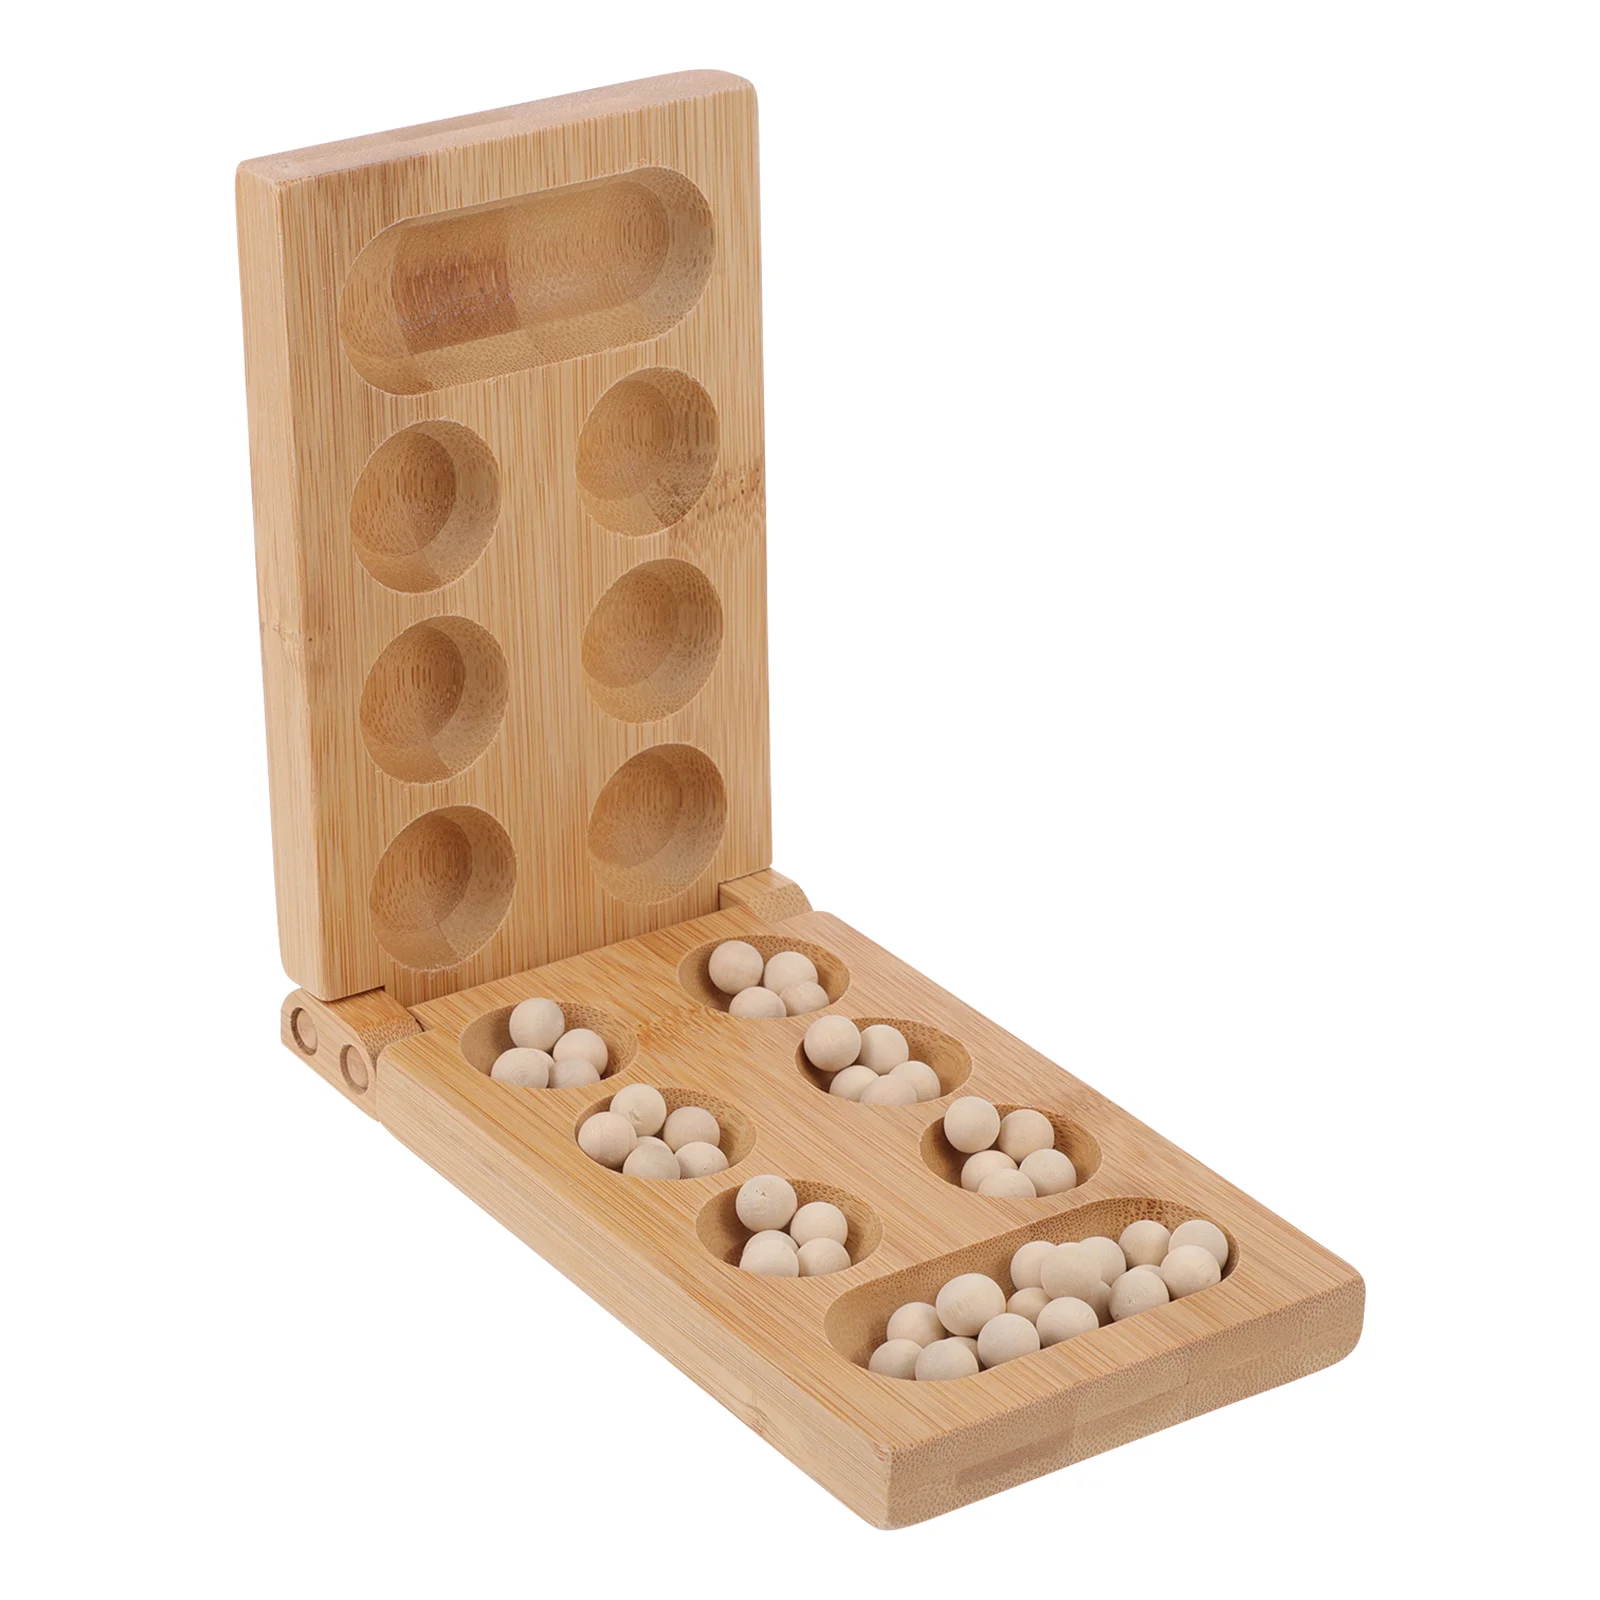 

Mancala Thinking Puzzle Game Intelligence Plaything Board Bamboo Kids Logic Training Chess Toy Educational Wood